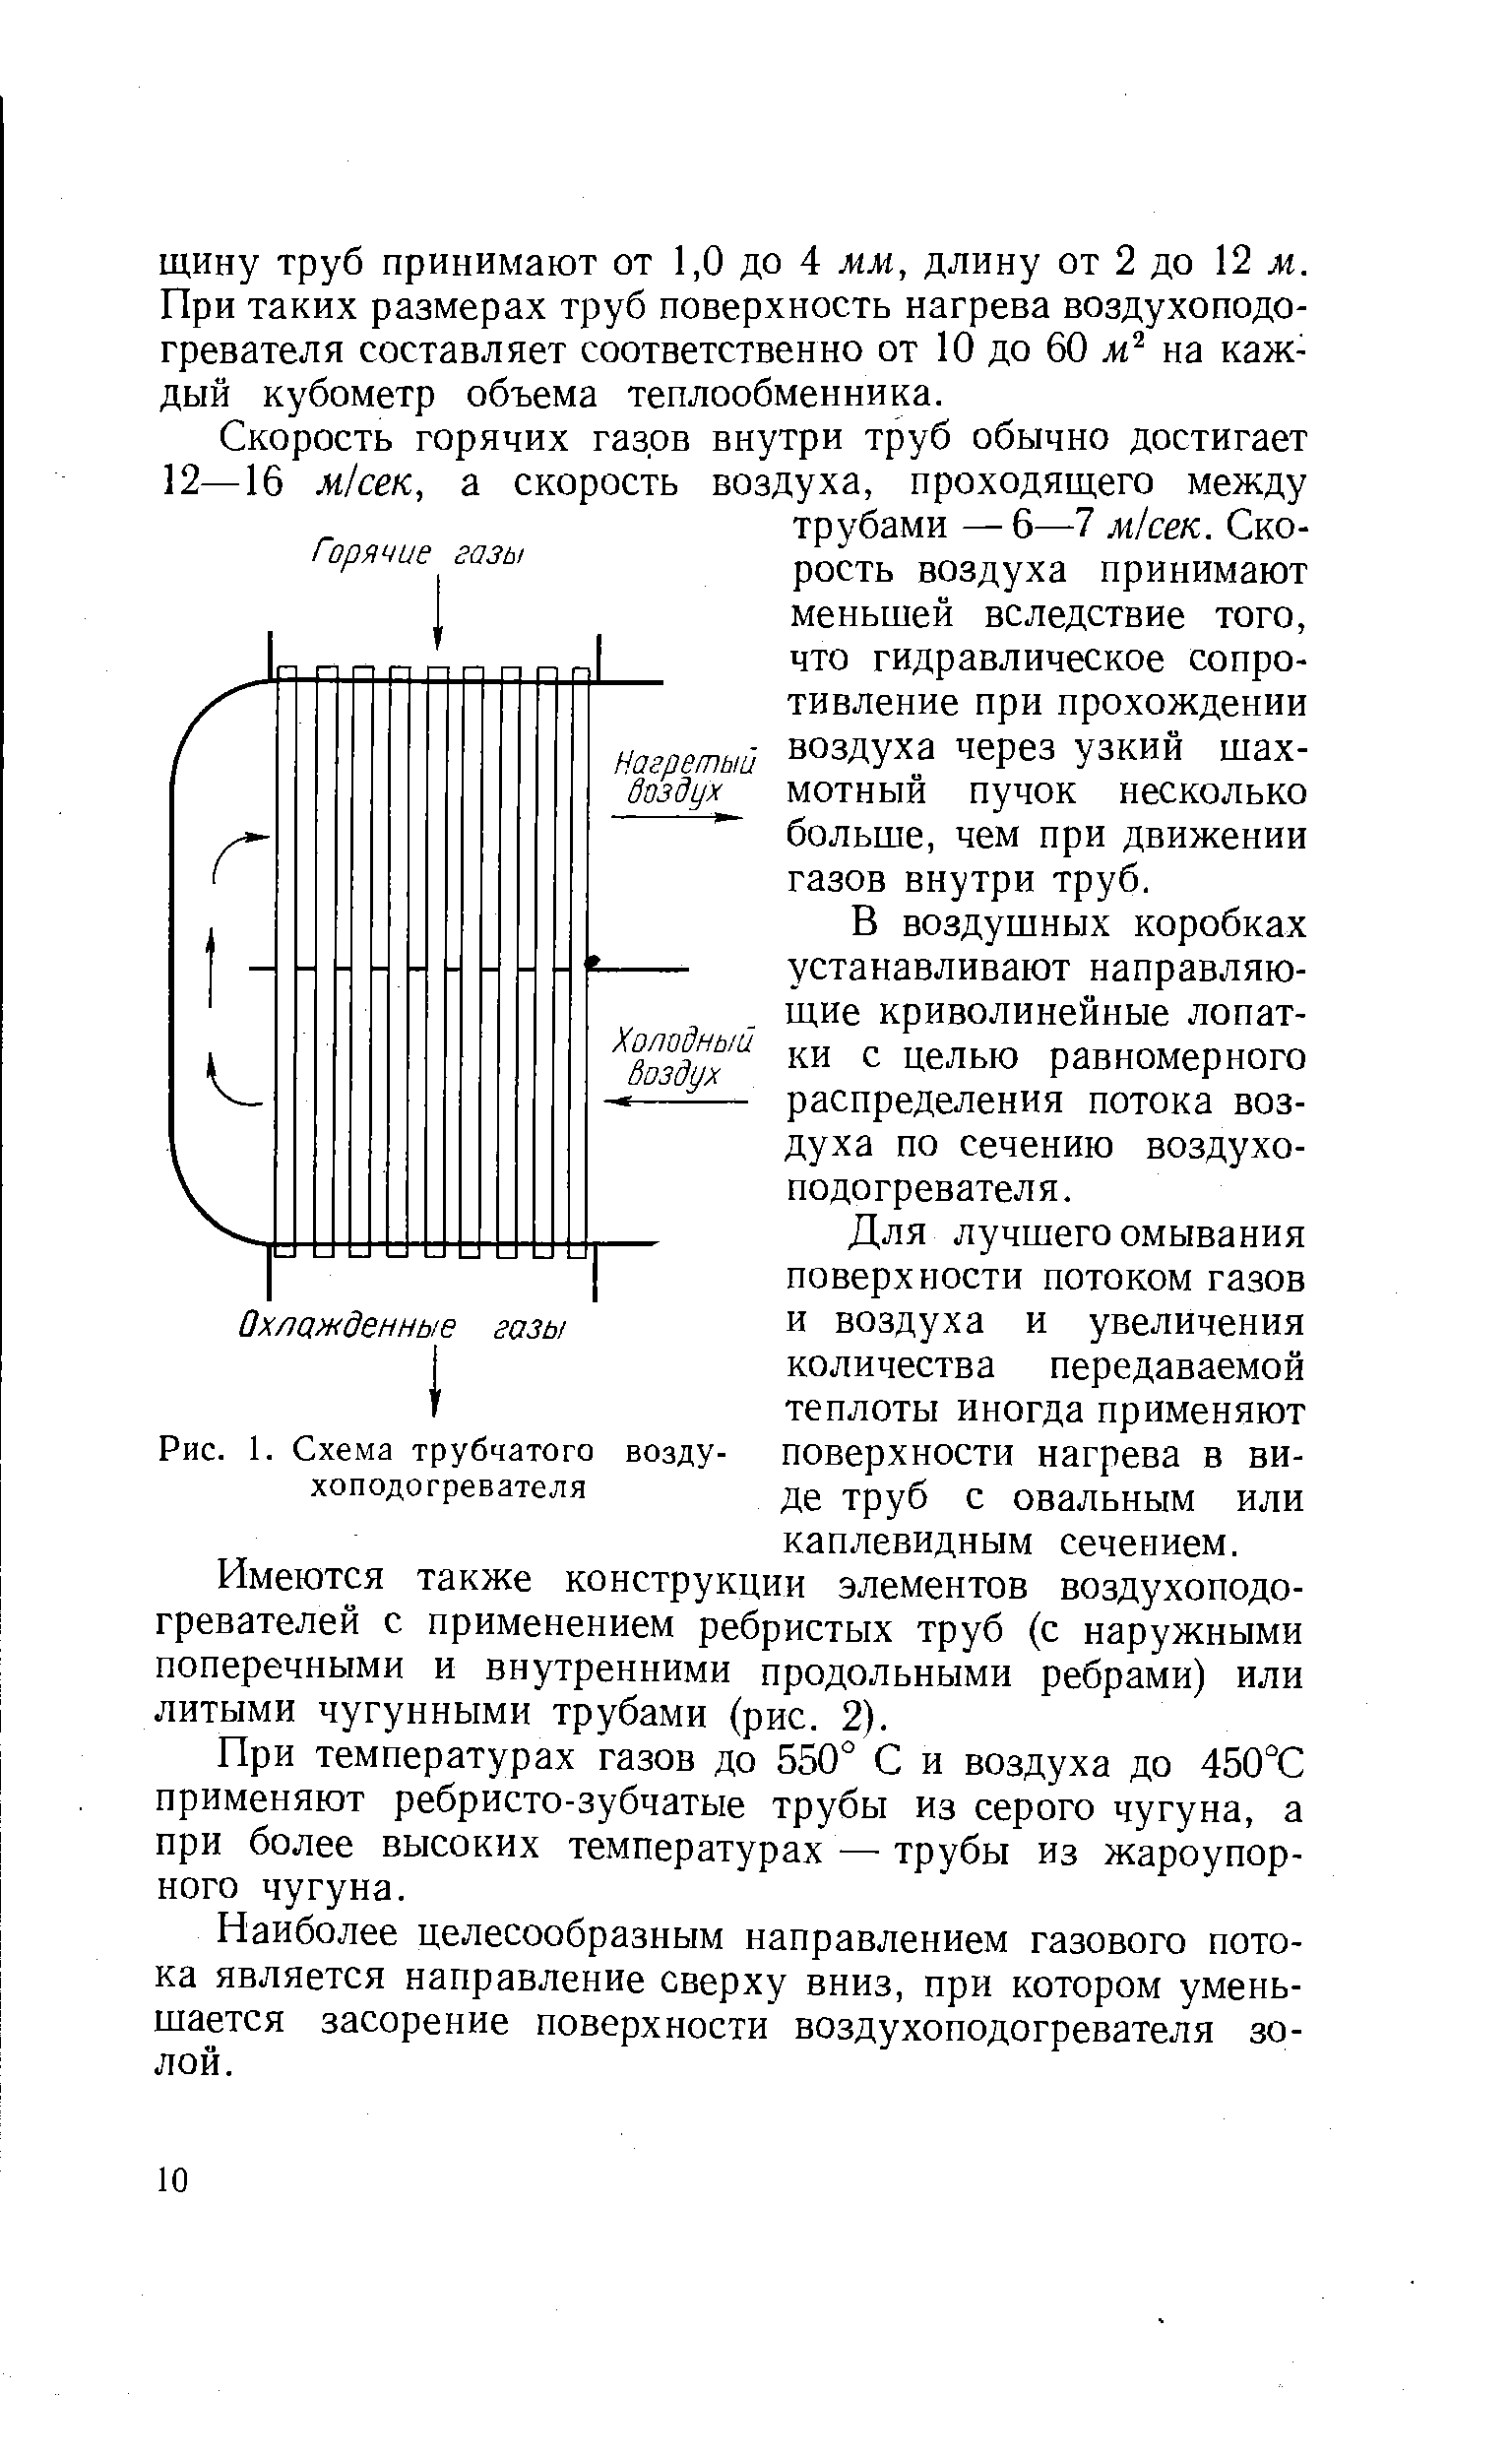 Рис. 1. Схема трубчатого воздухоподогревателя
